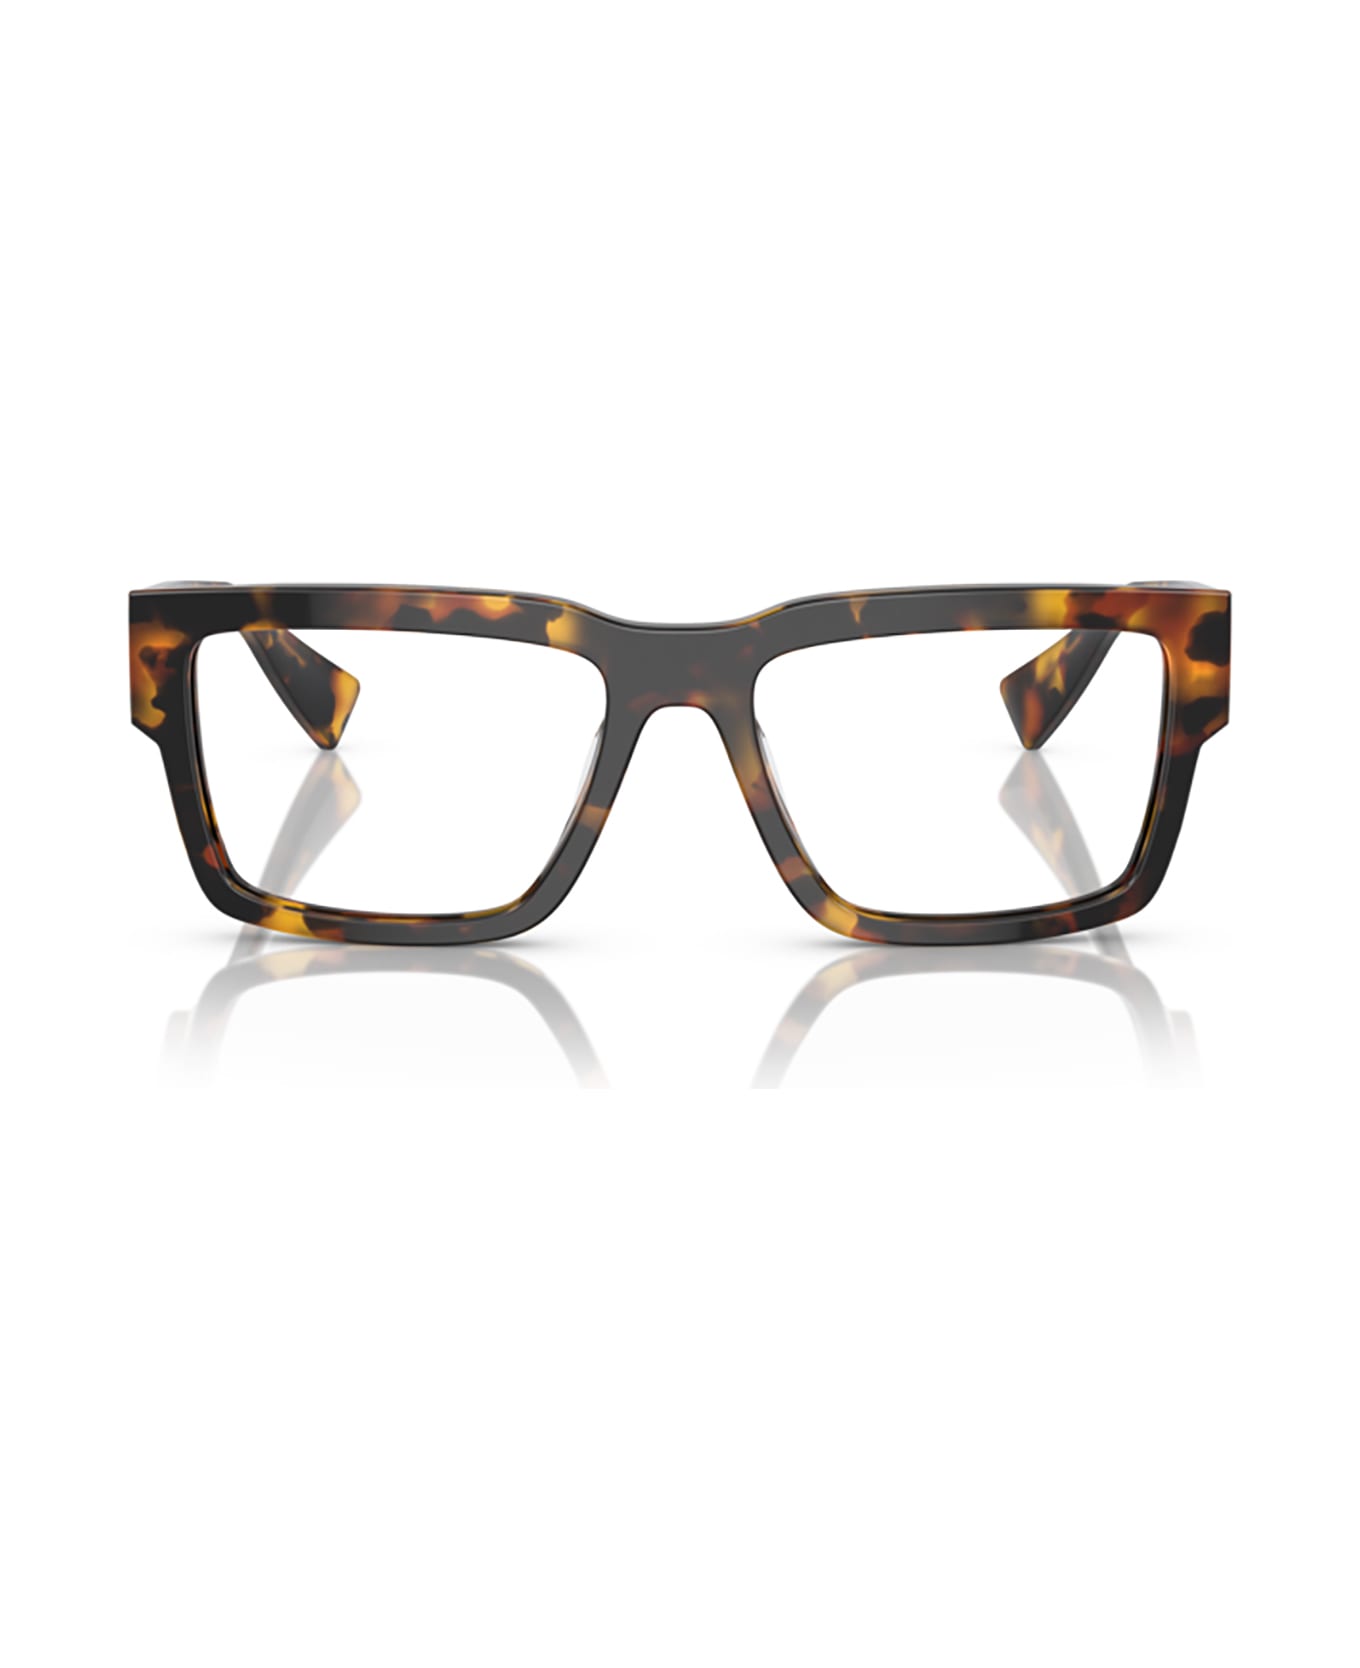 Miu Miu Eyewear Mu 02xv Honey Tortoise Glasses - Honey Tortoise アイウェア